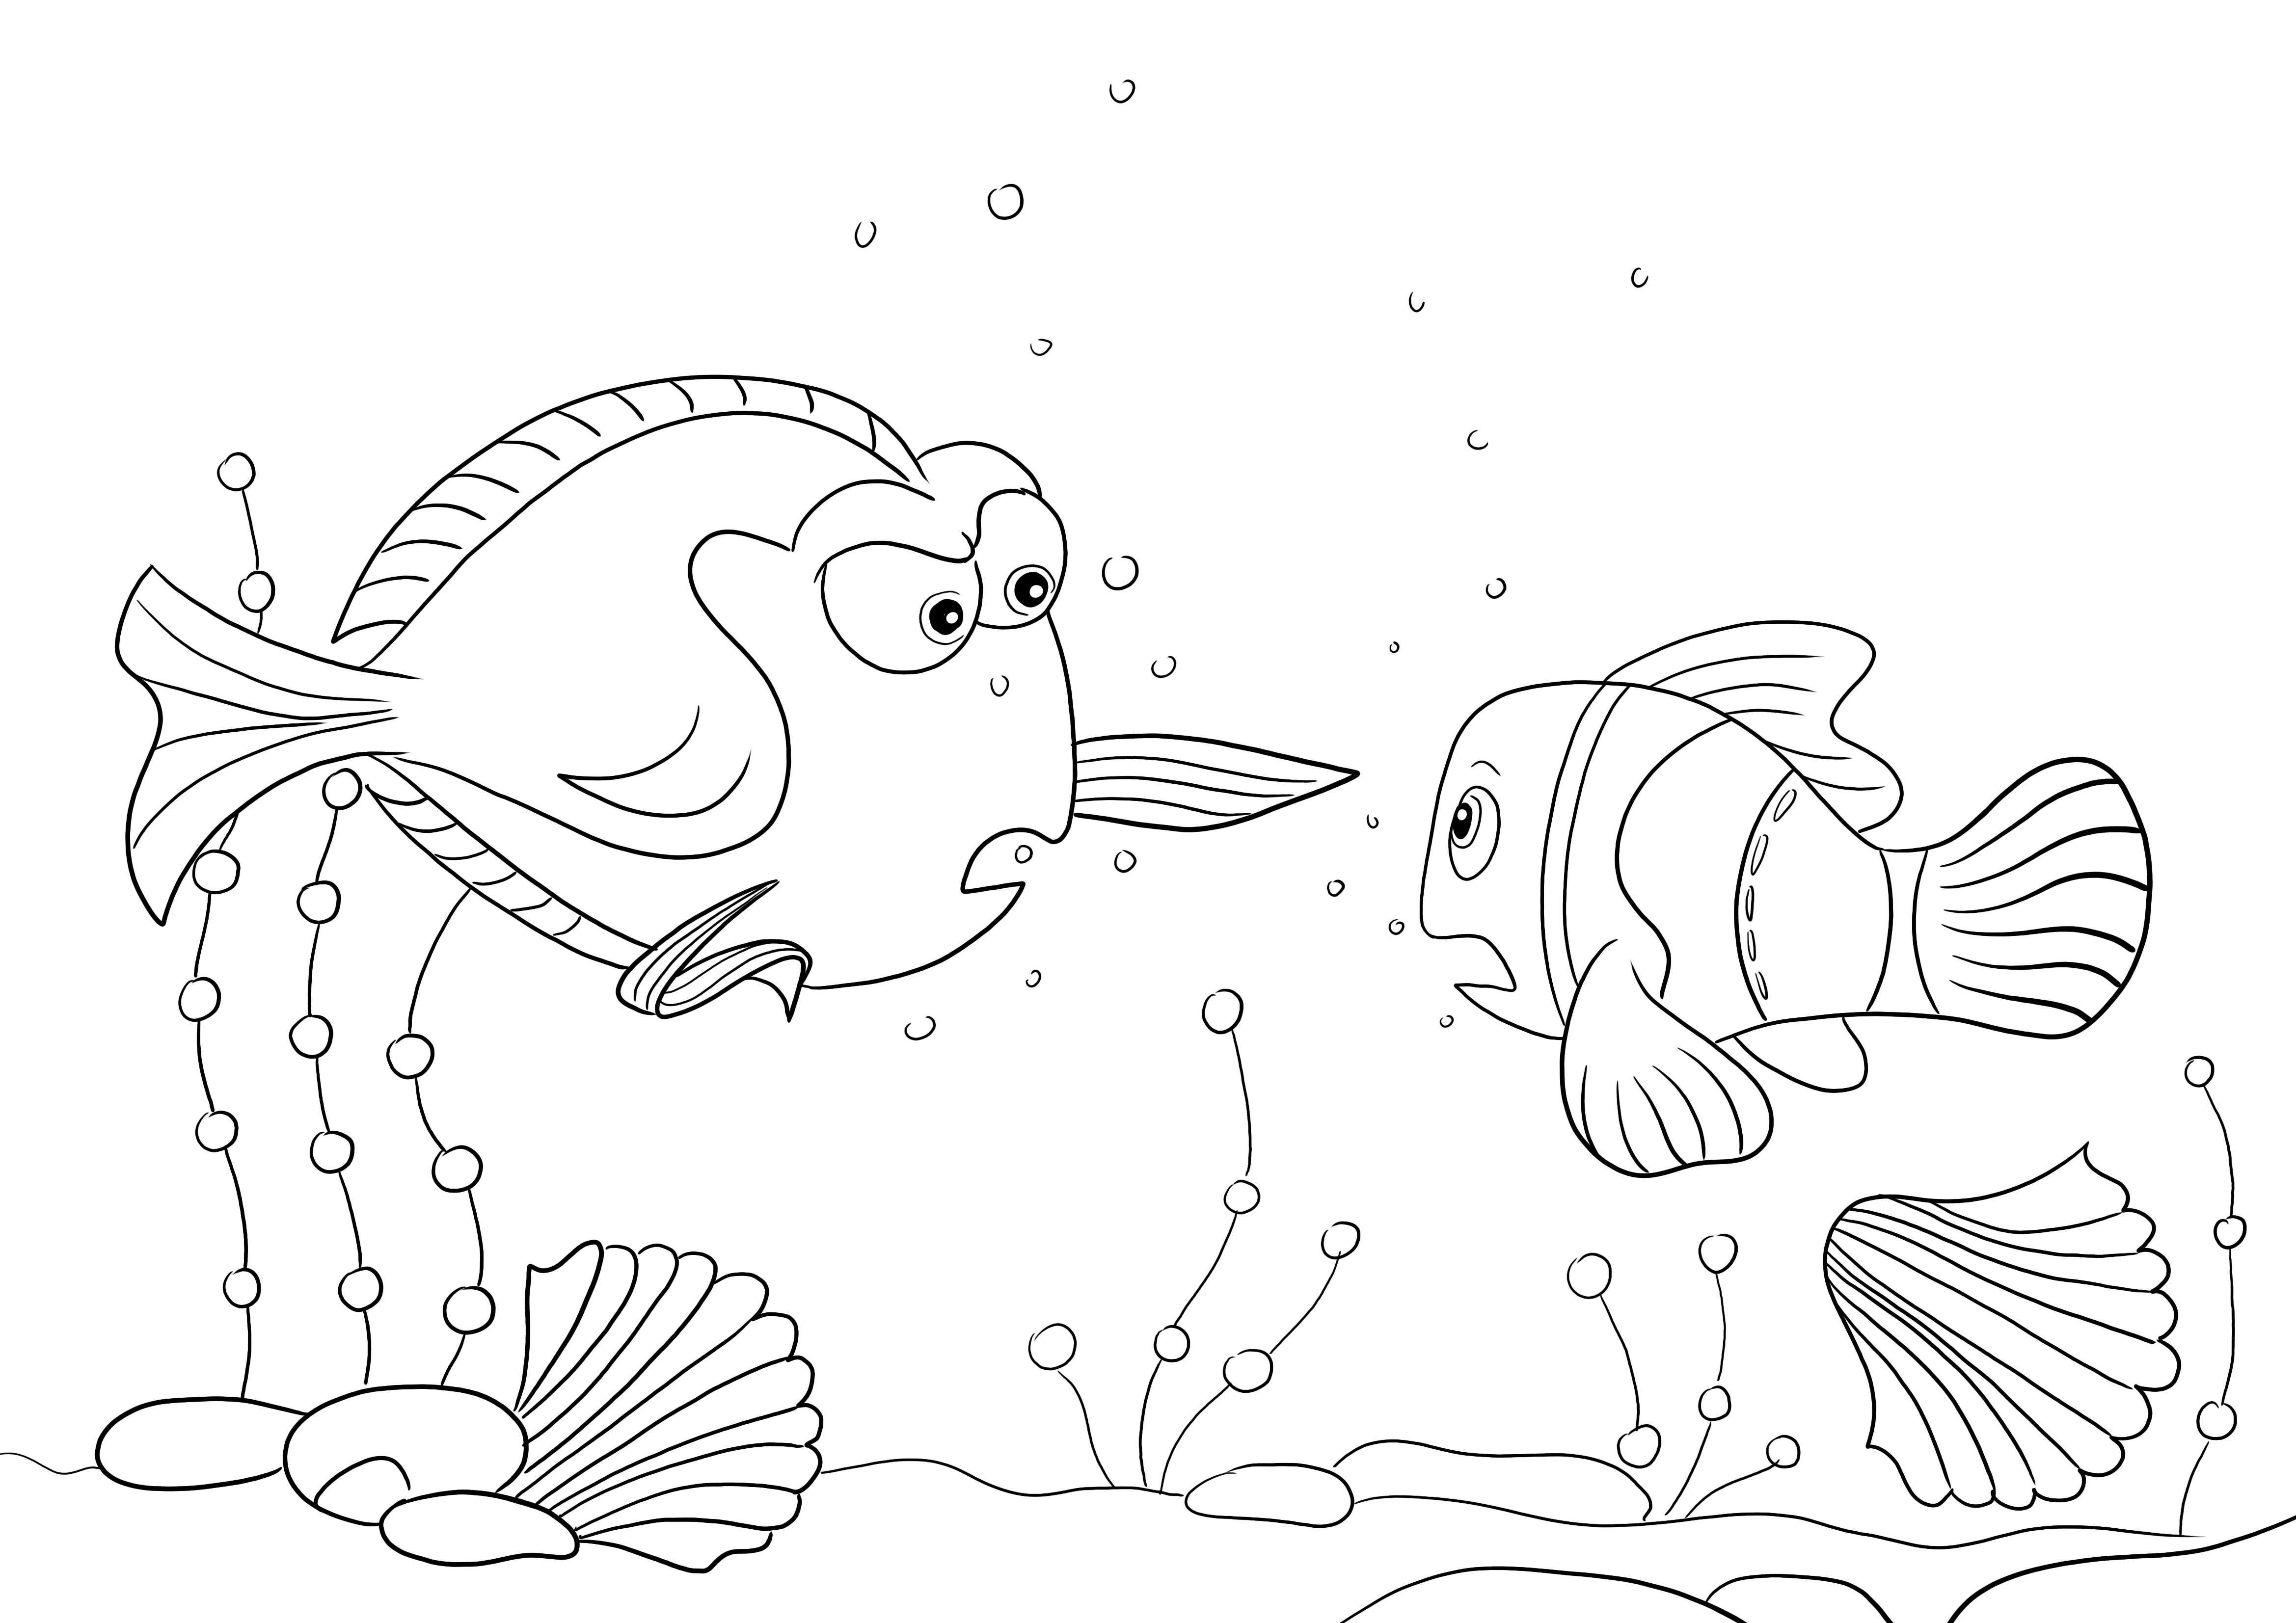 Charlie e Nemo para colorir grátis para as crianças baixarem e colorirem com diversão